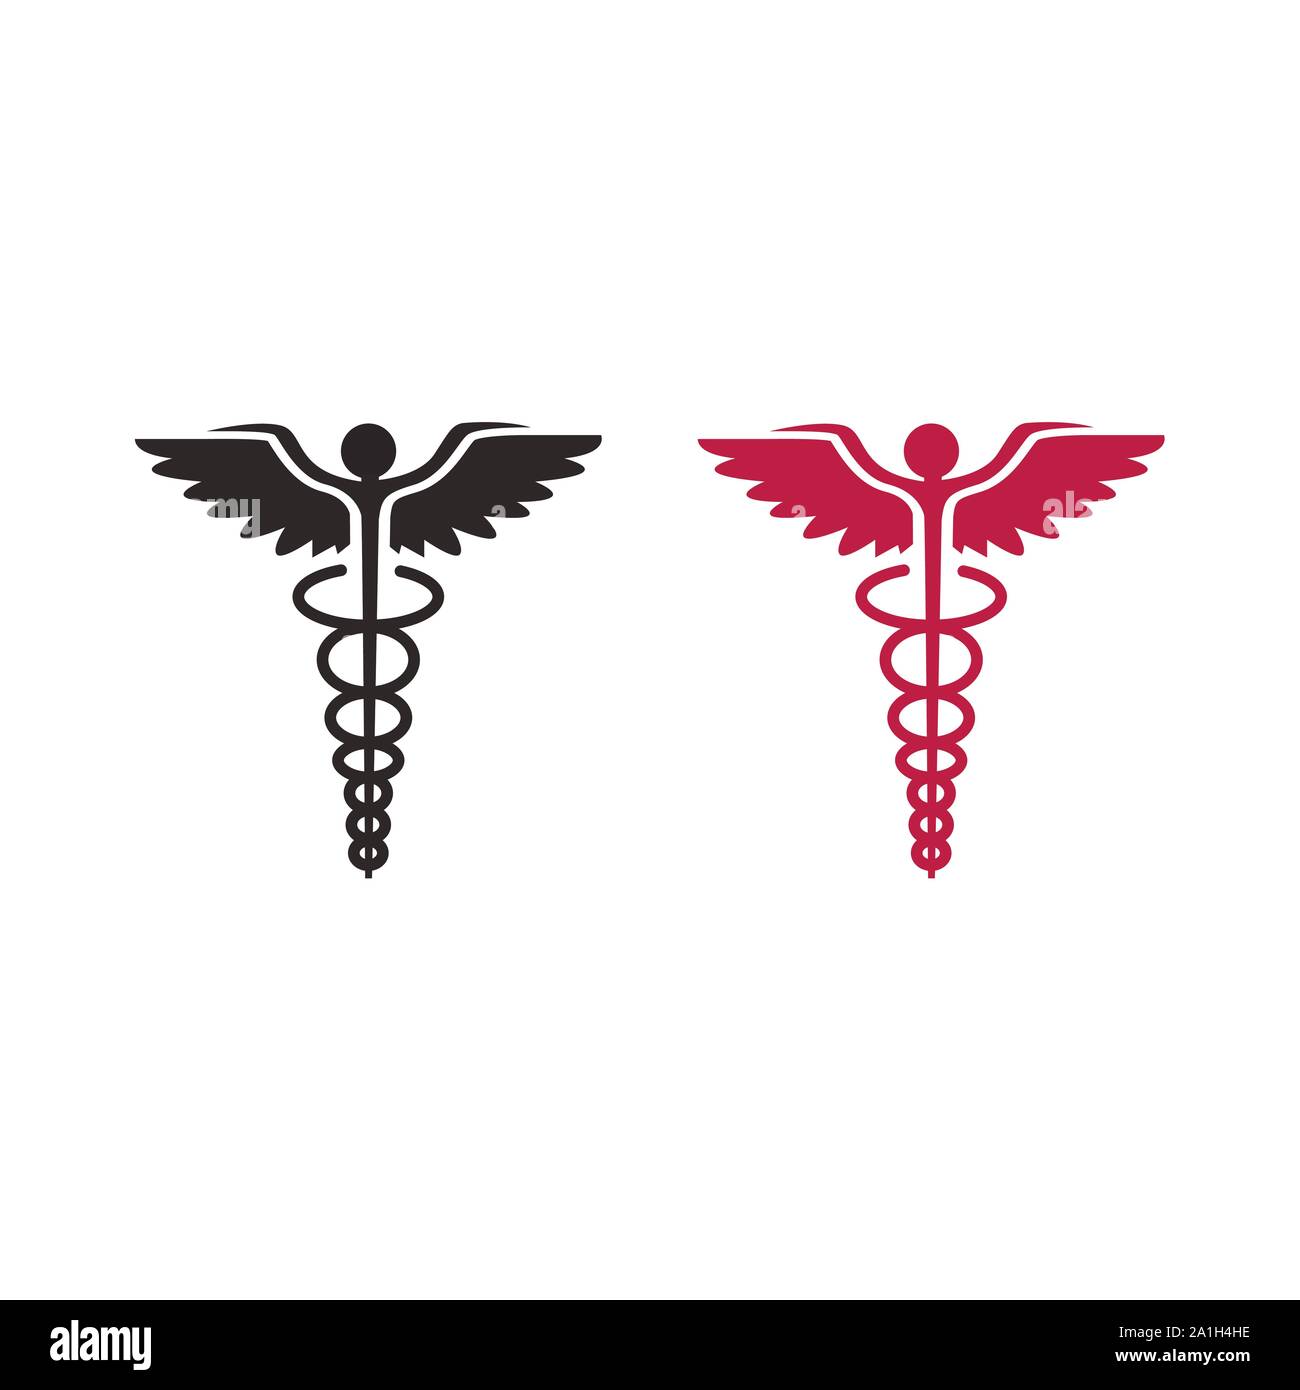 Logotipo de médicos. Caduceo símbolo de salud pública tiene dos antorchas de serpiente Ilustración del Vector